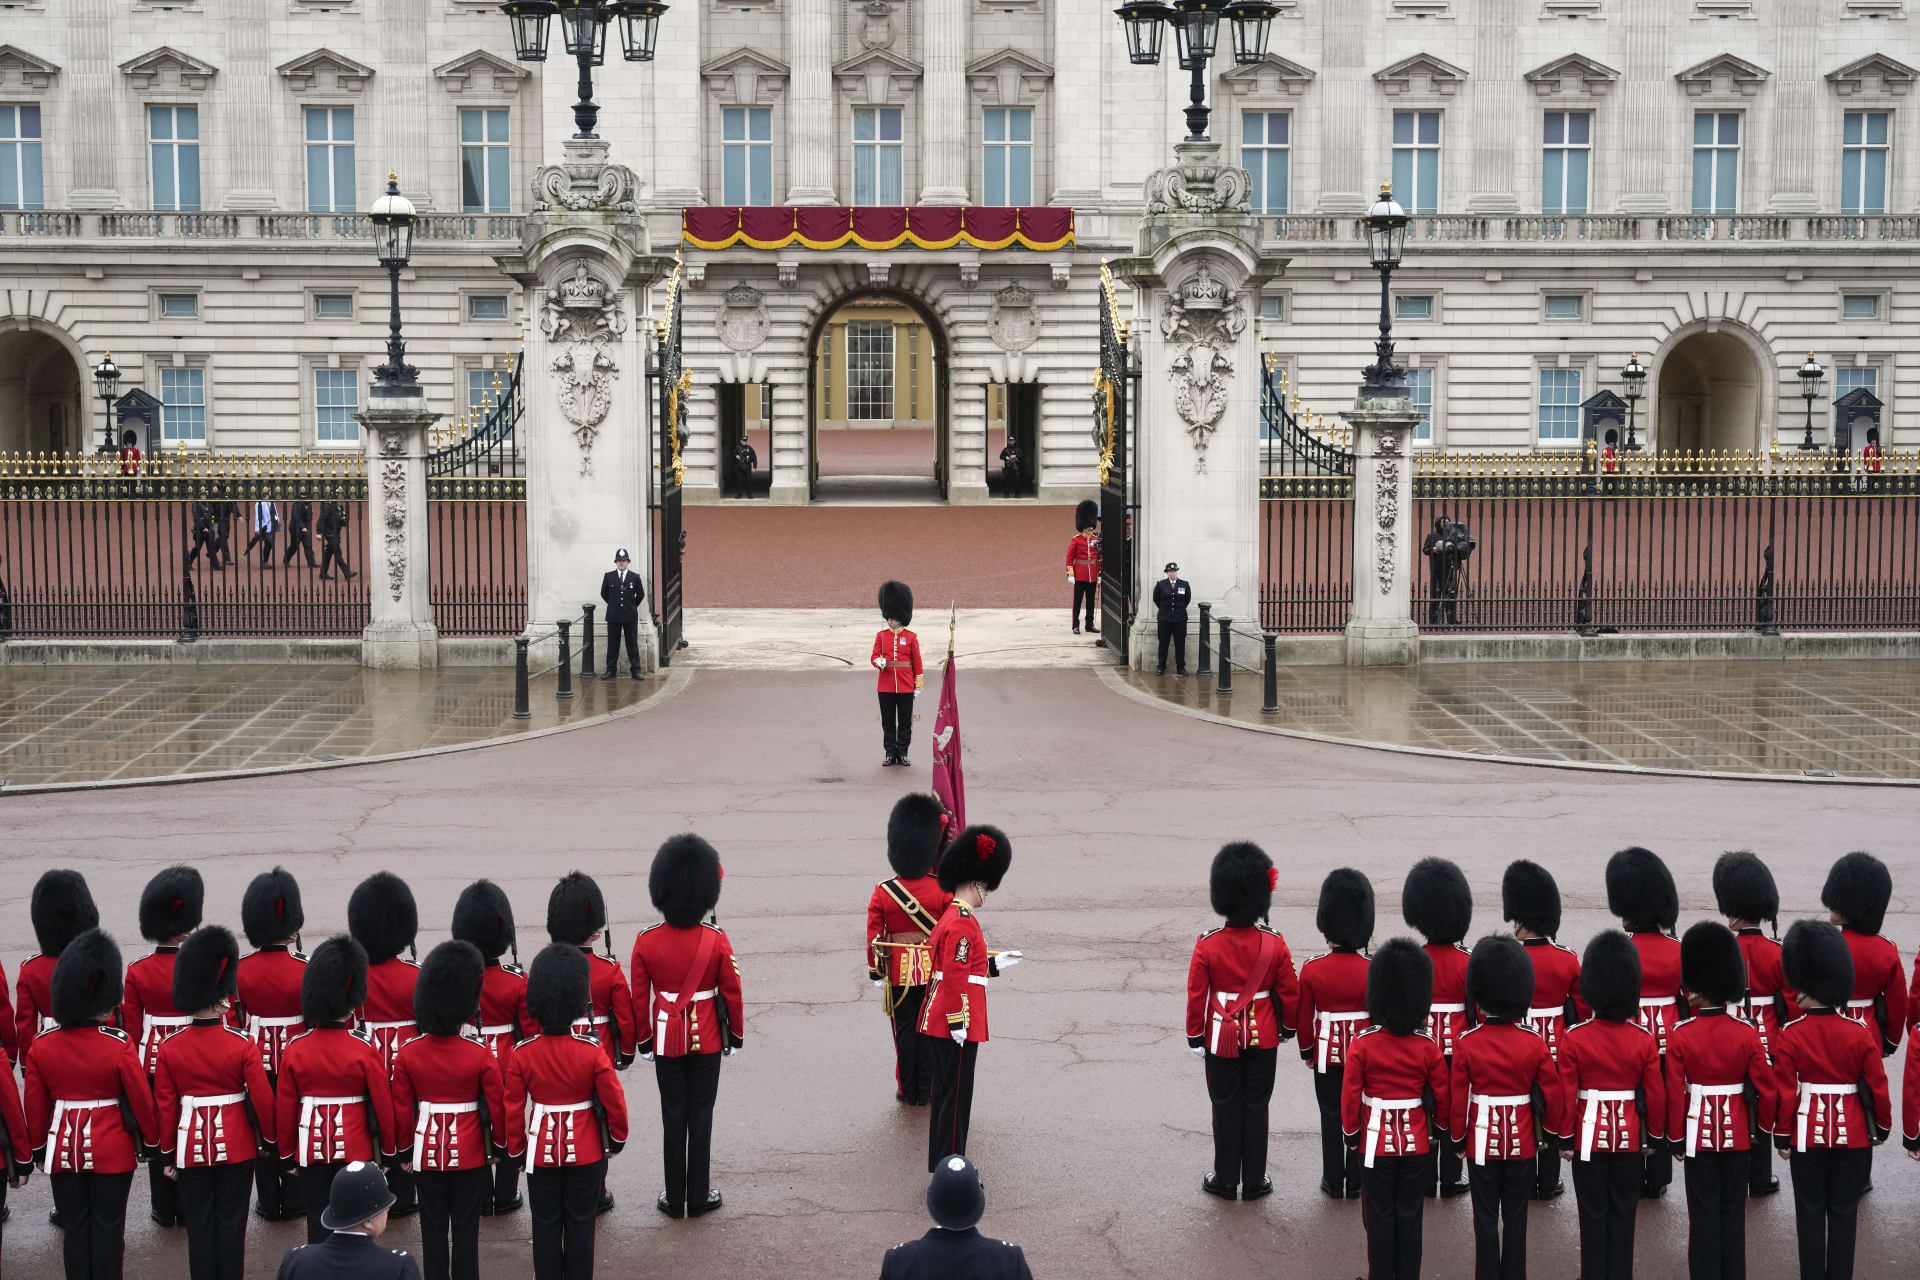 الملك تشارلز والملكة كاميليا يتوجهان لقصر باكنغهام في بداية التتويج وشرطة لندن تنشر الآلاف